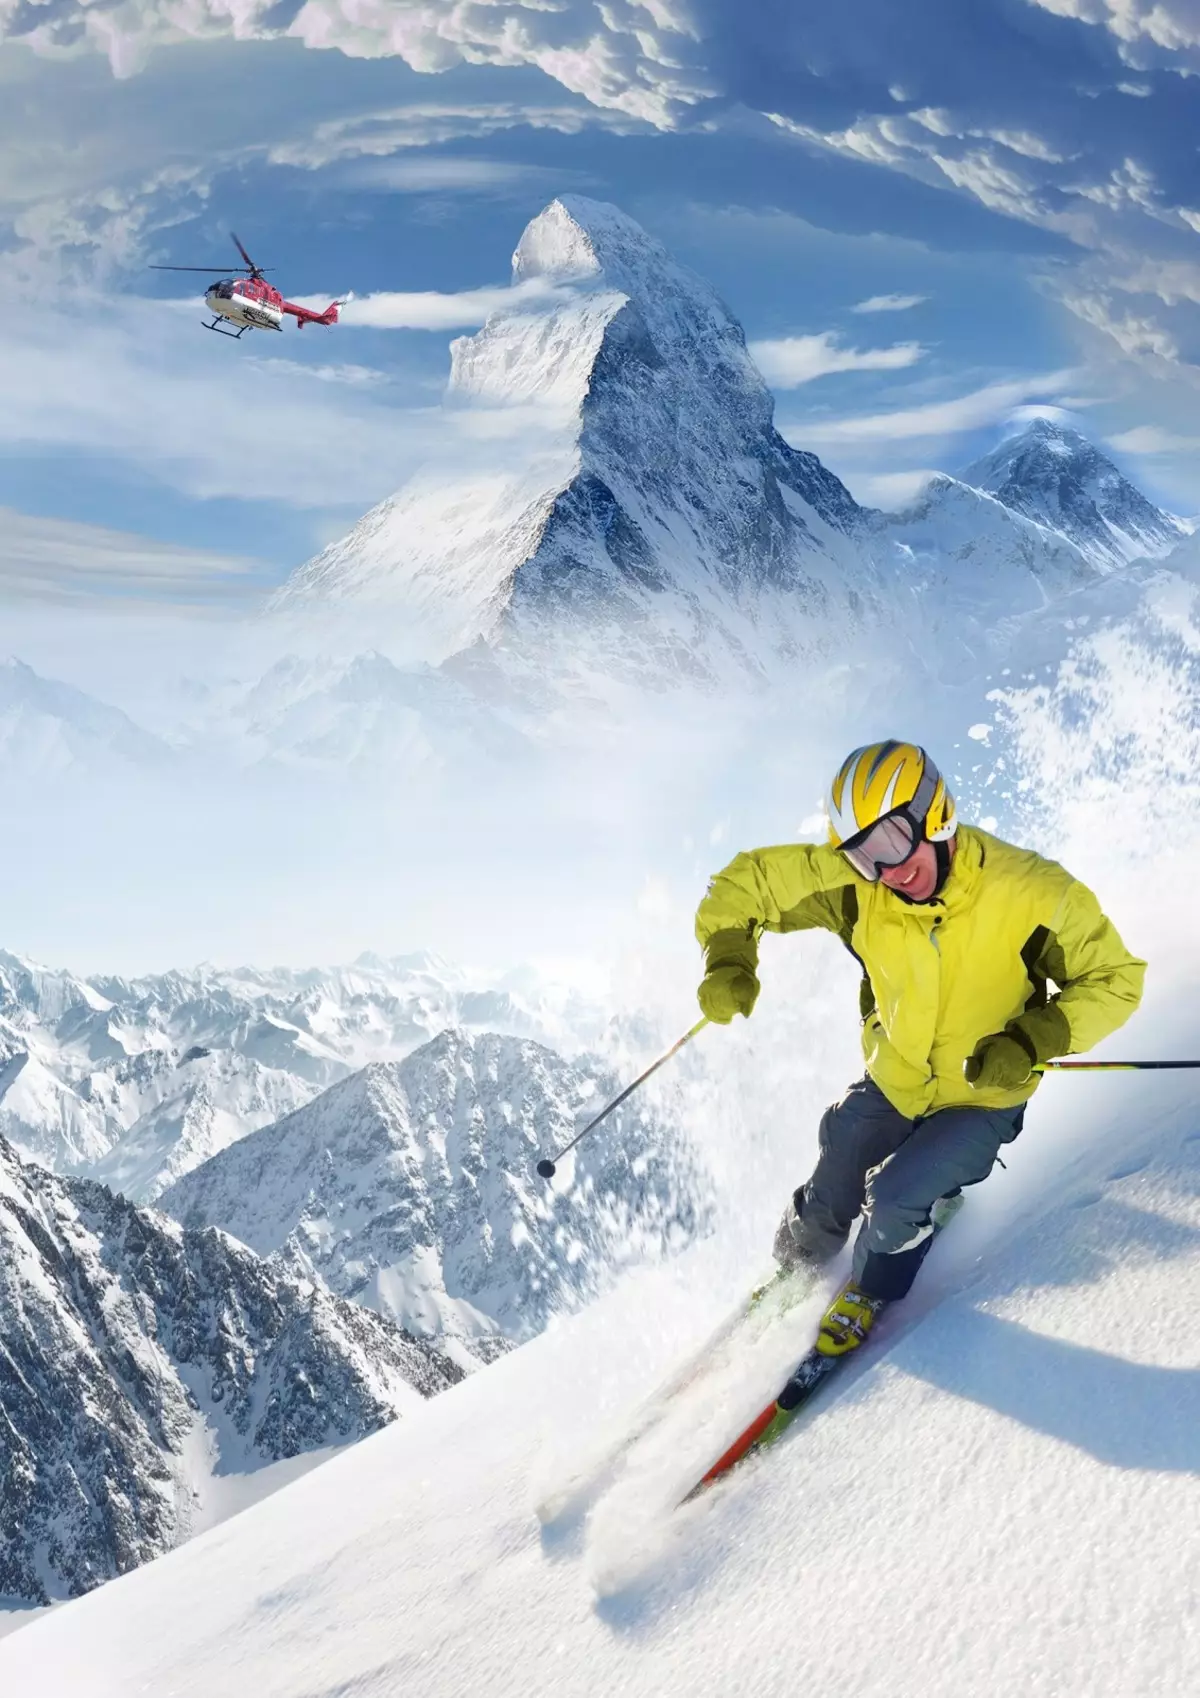 Atomic csizma (47 fotó): Snowboard és sí modellek, különleges vonal márka line 